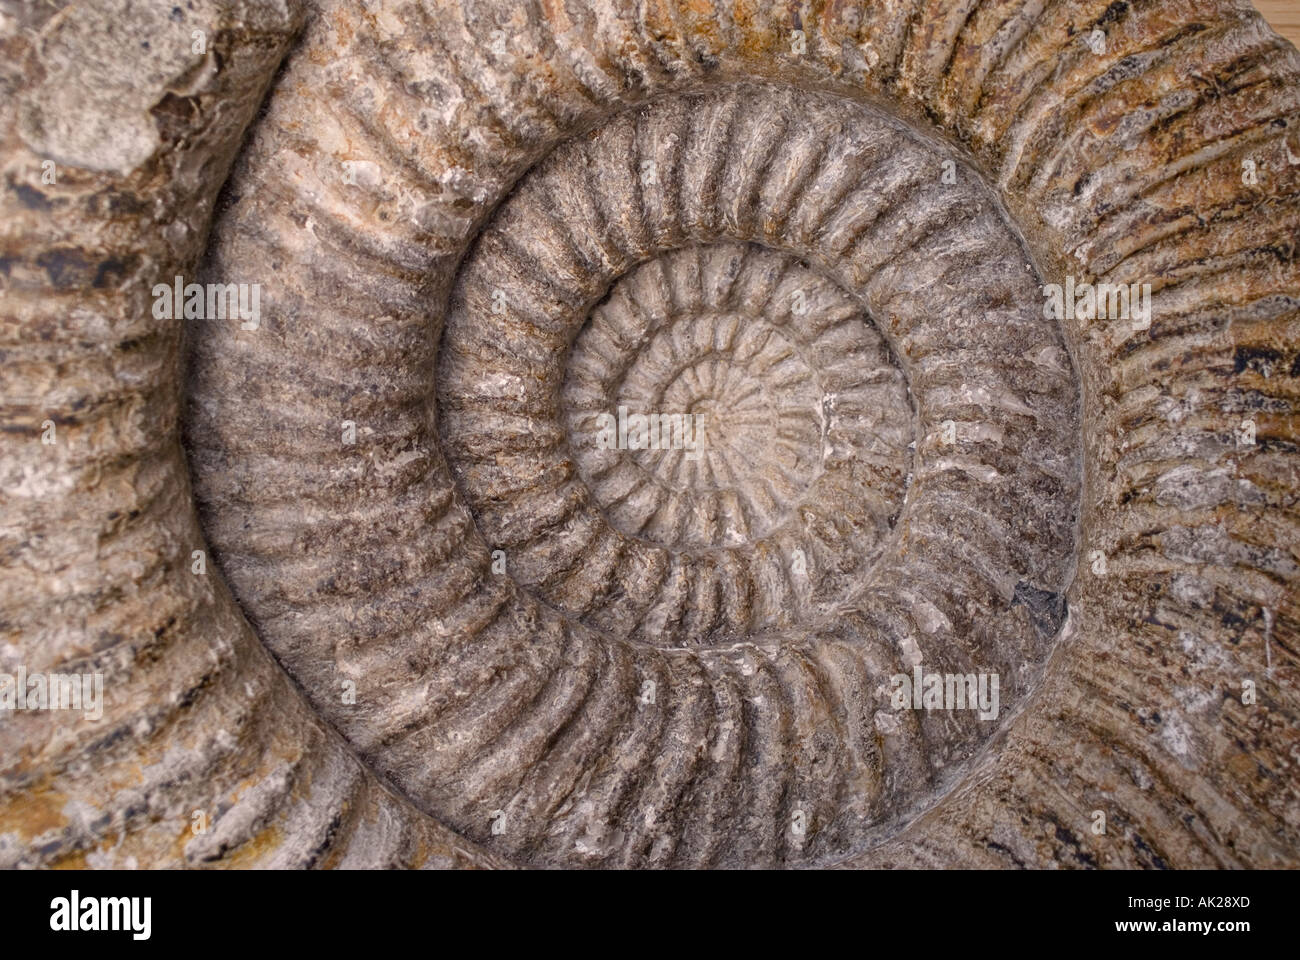 D'une forme en spirale distinctif d'ammonites fossilisées Banque D'Images